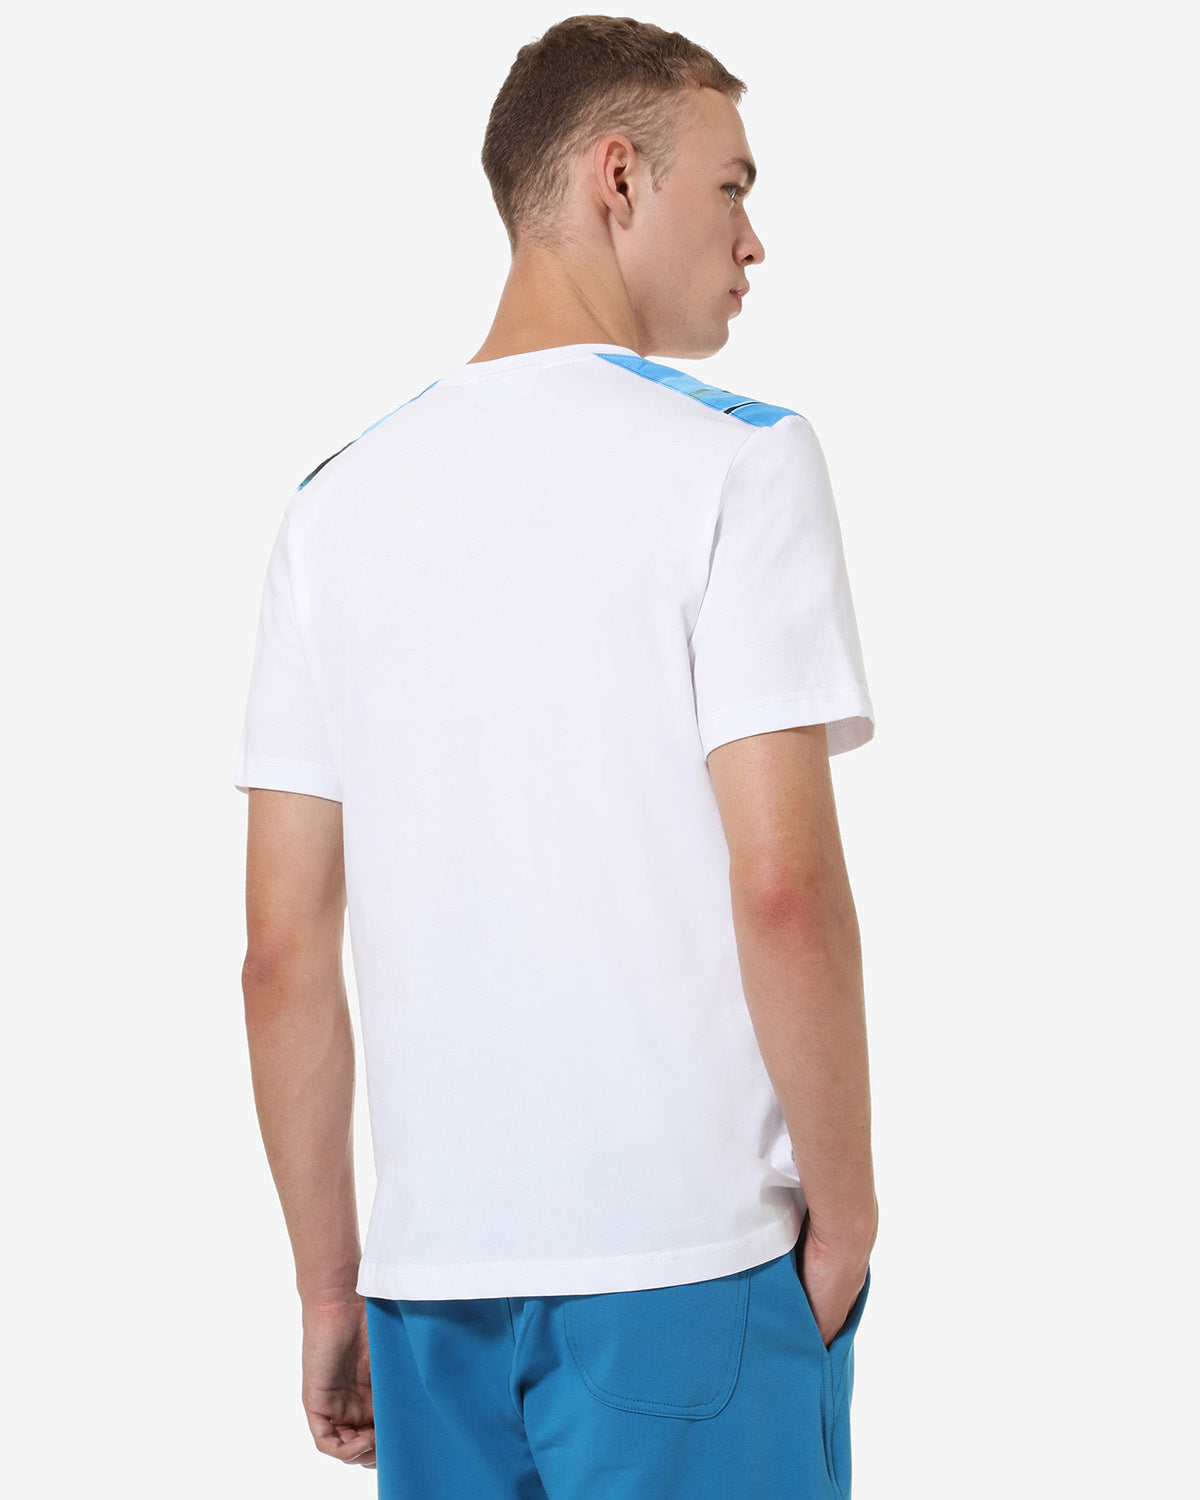 Deep Water T-shirt: Australian Sportswear